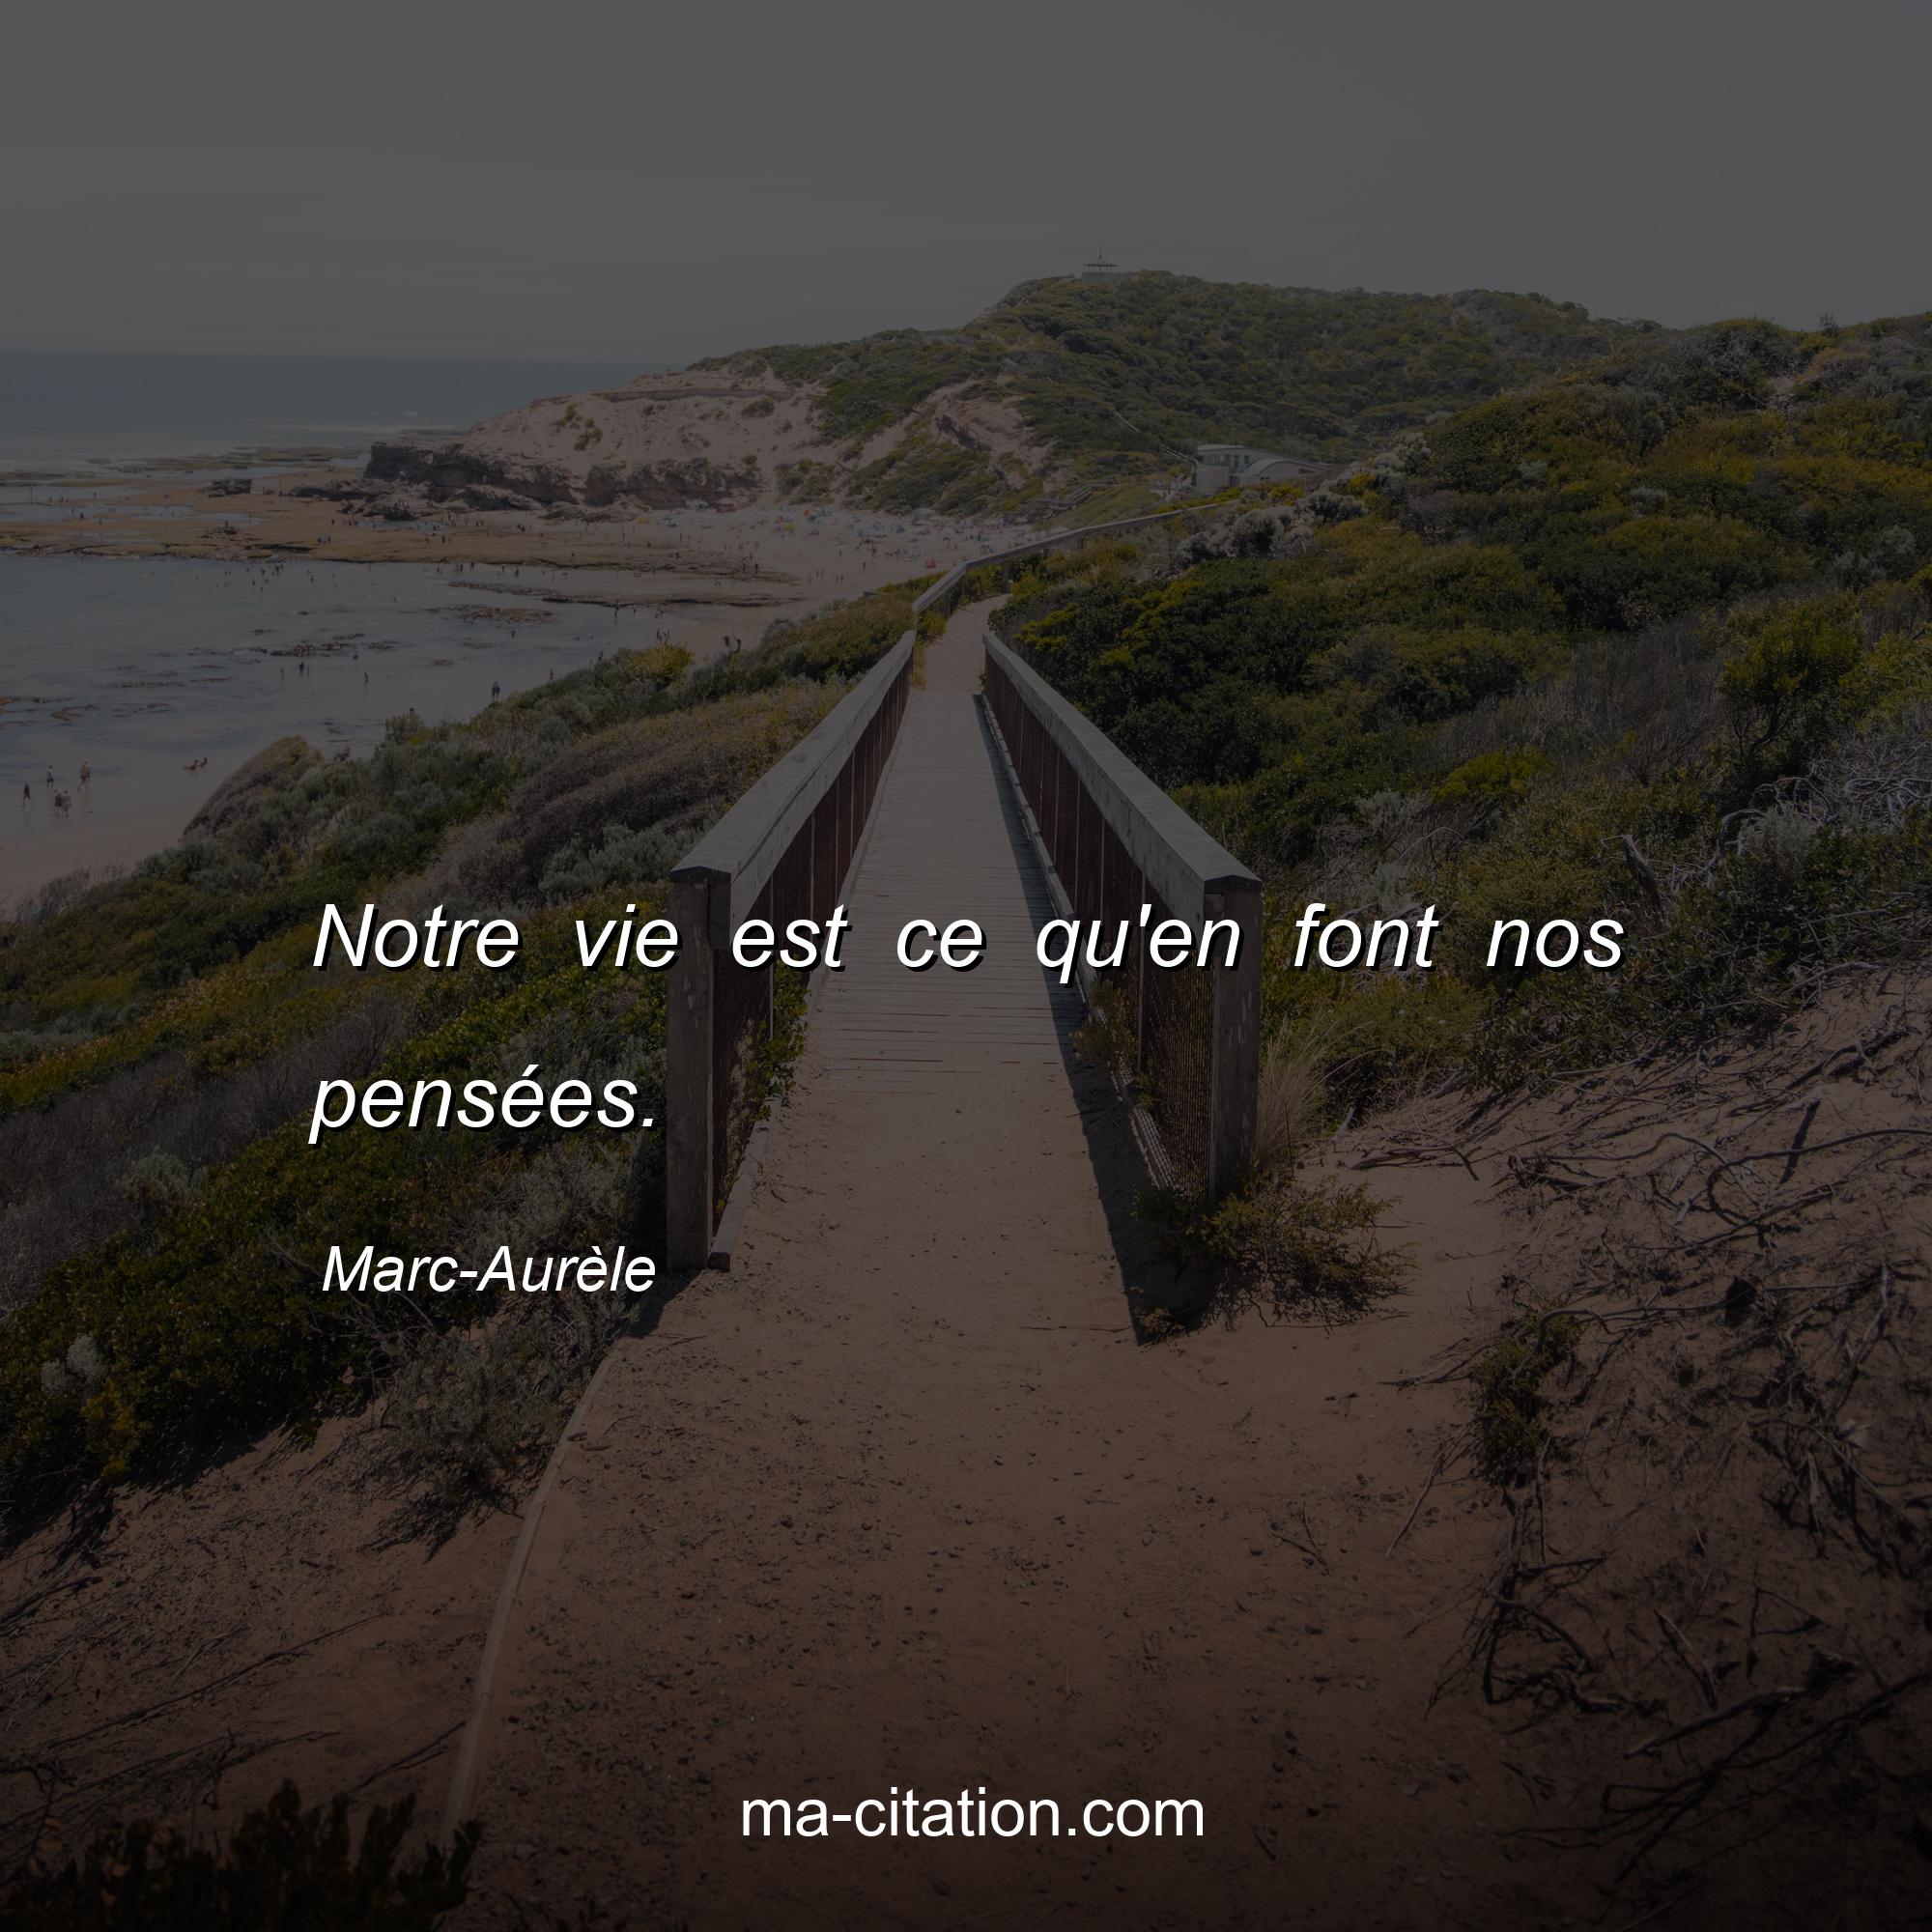 Marc-Aurèle : Notre vie est ce qu'en font nos pensées.